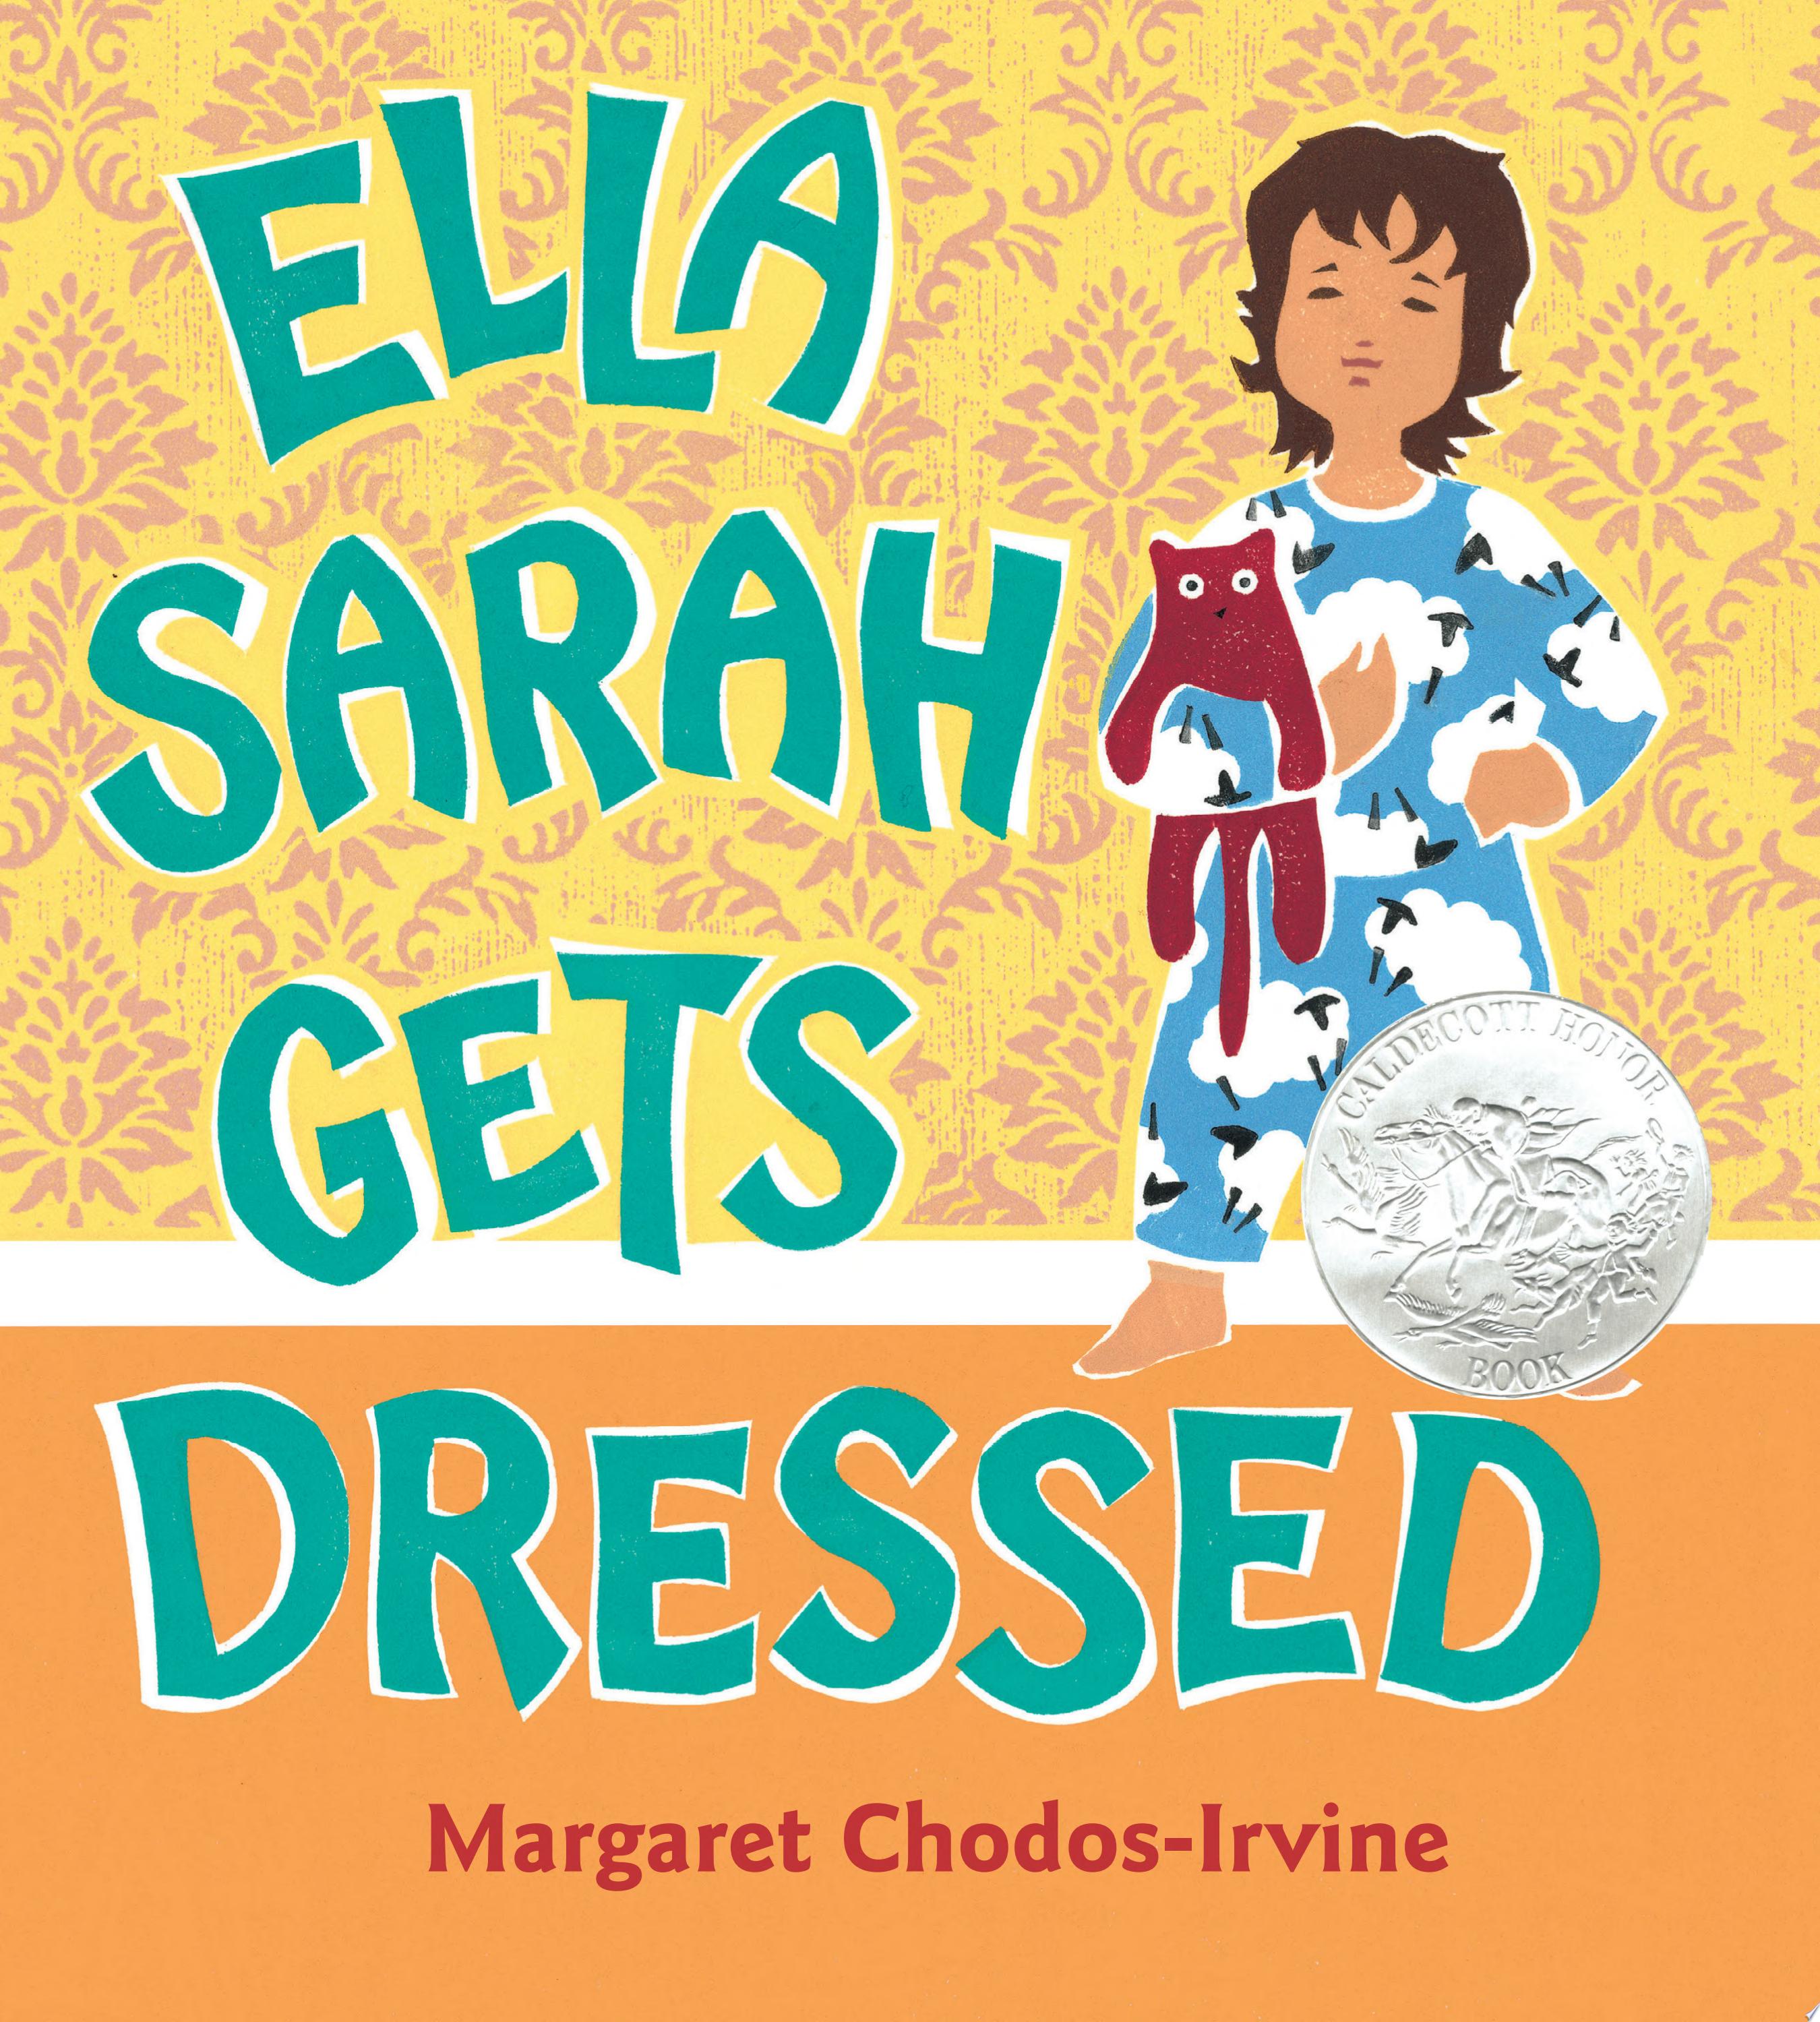 Image for "Ella Sarah Gets Dressed"